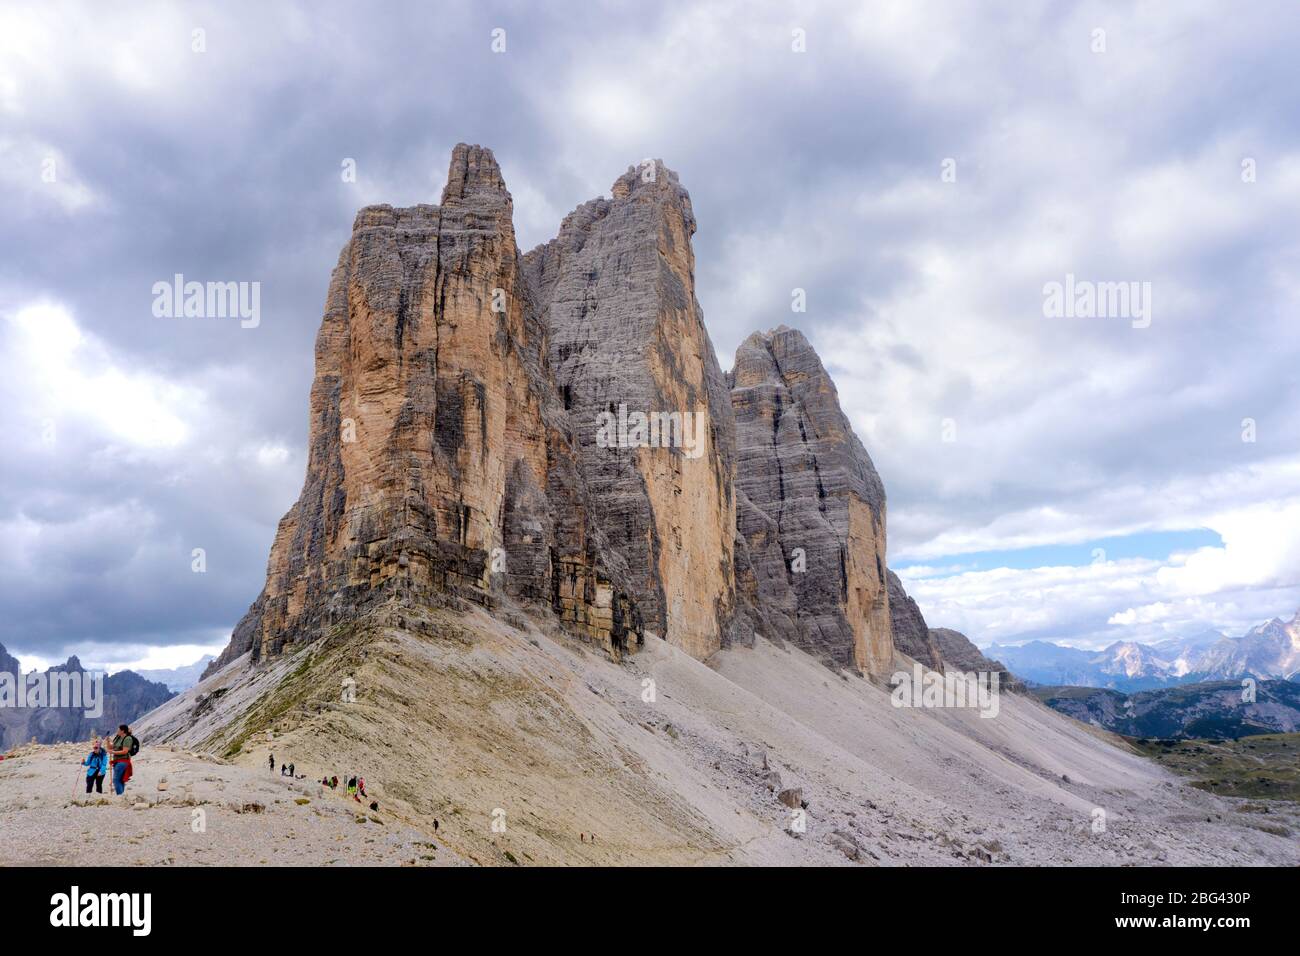 Site de l'UNESCO de Tre Cime di Lavaredo dans les Dolomites italiennes Banque D'Images